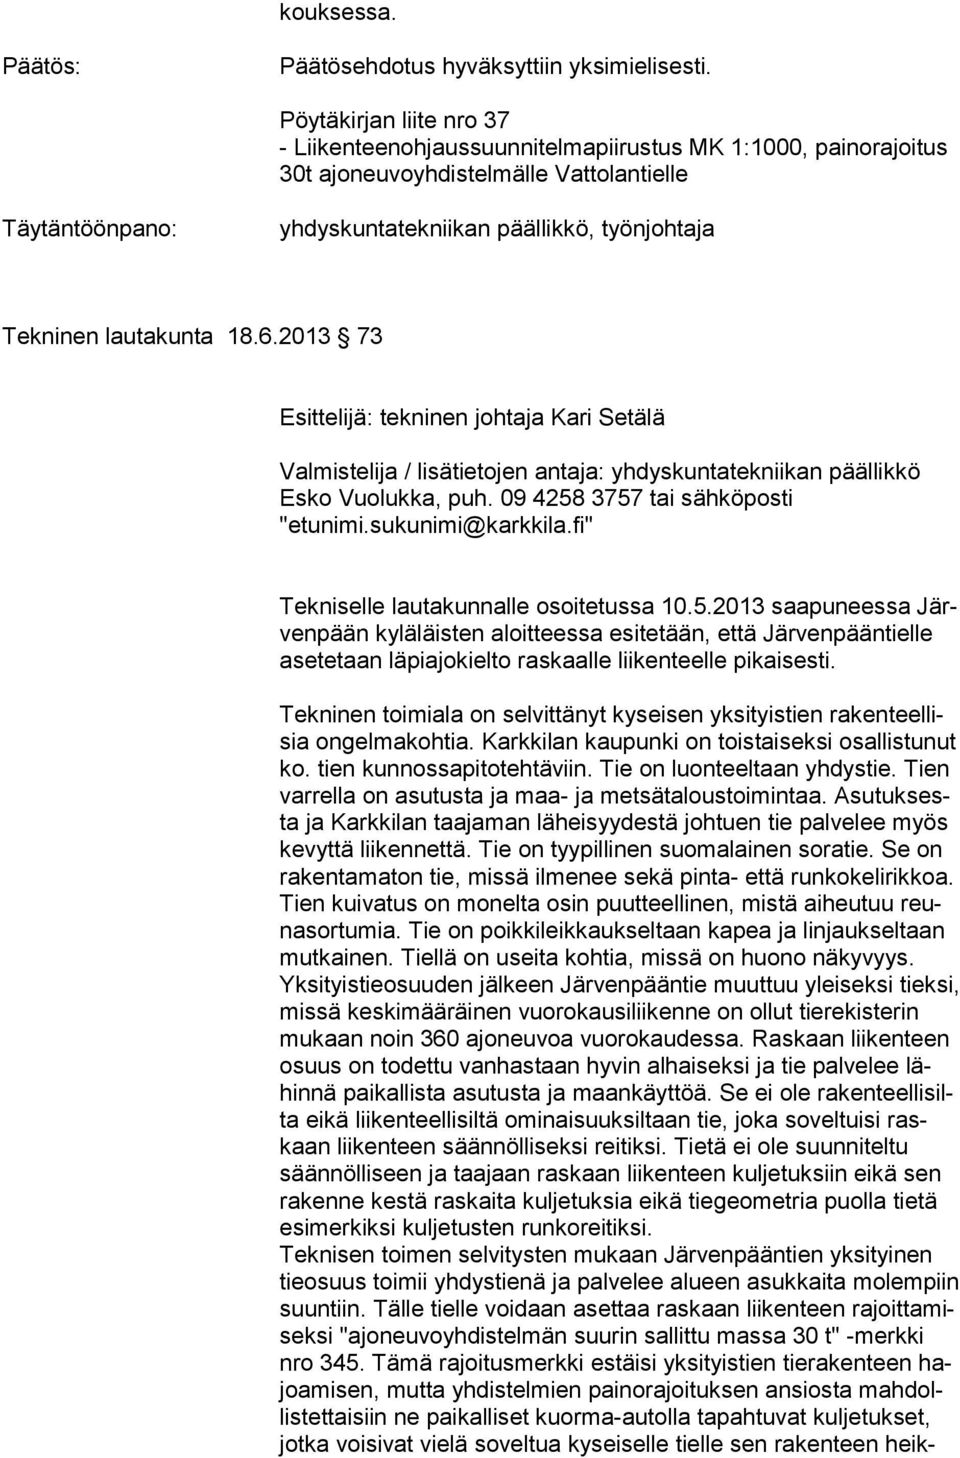 lautakunta 18.6.2013 73 Esittelijä: tekninen johtaja Kari Setälä Valmistelija / lisätietojen antaja: yhdyskuntatekniikan päällikkö Esko Vuolukka, puh. 09 4258 3757 tai sähköposti "etunimi.